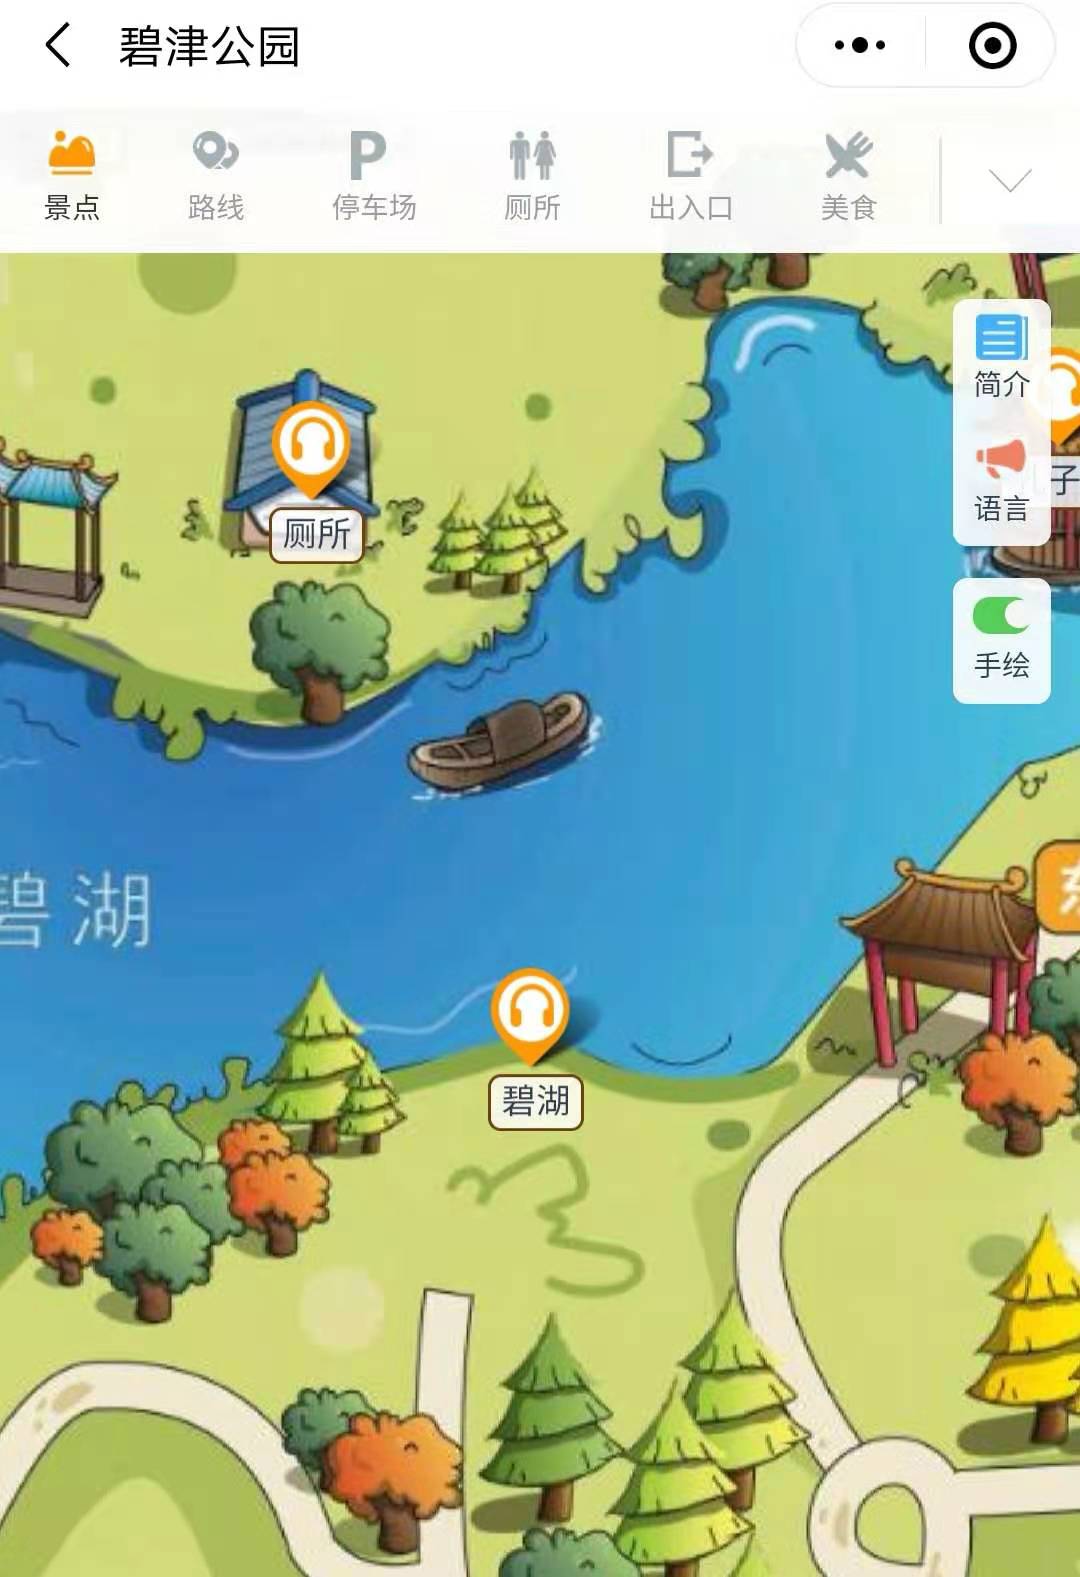 2021年国家3A景区碧津公园手绘地图，电子导览，语音讲解系统上线.jpg